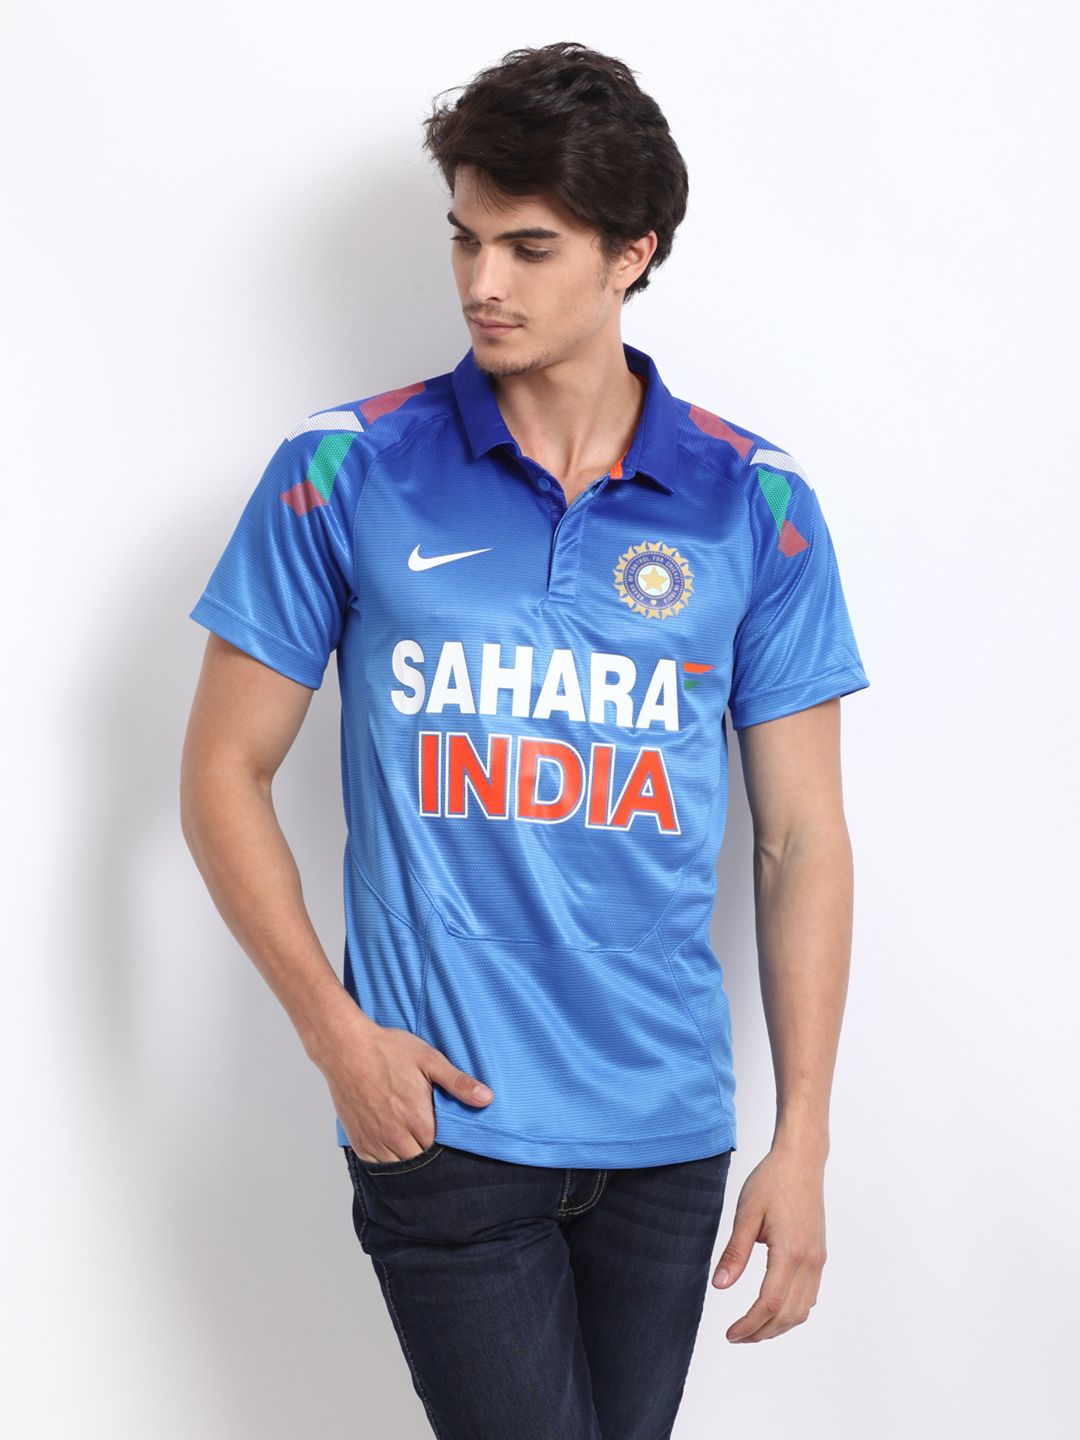 sahara india cricket jersey